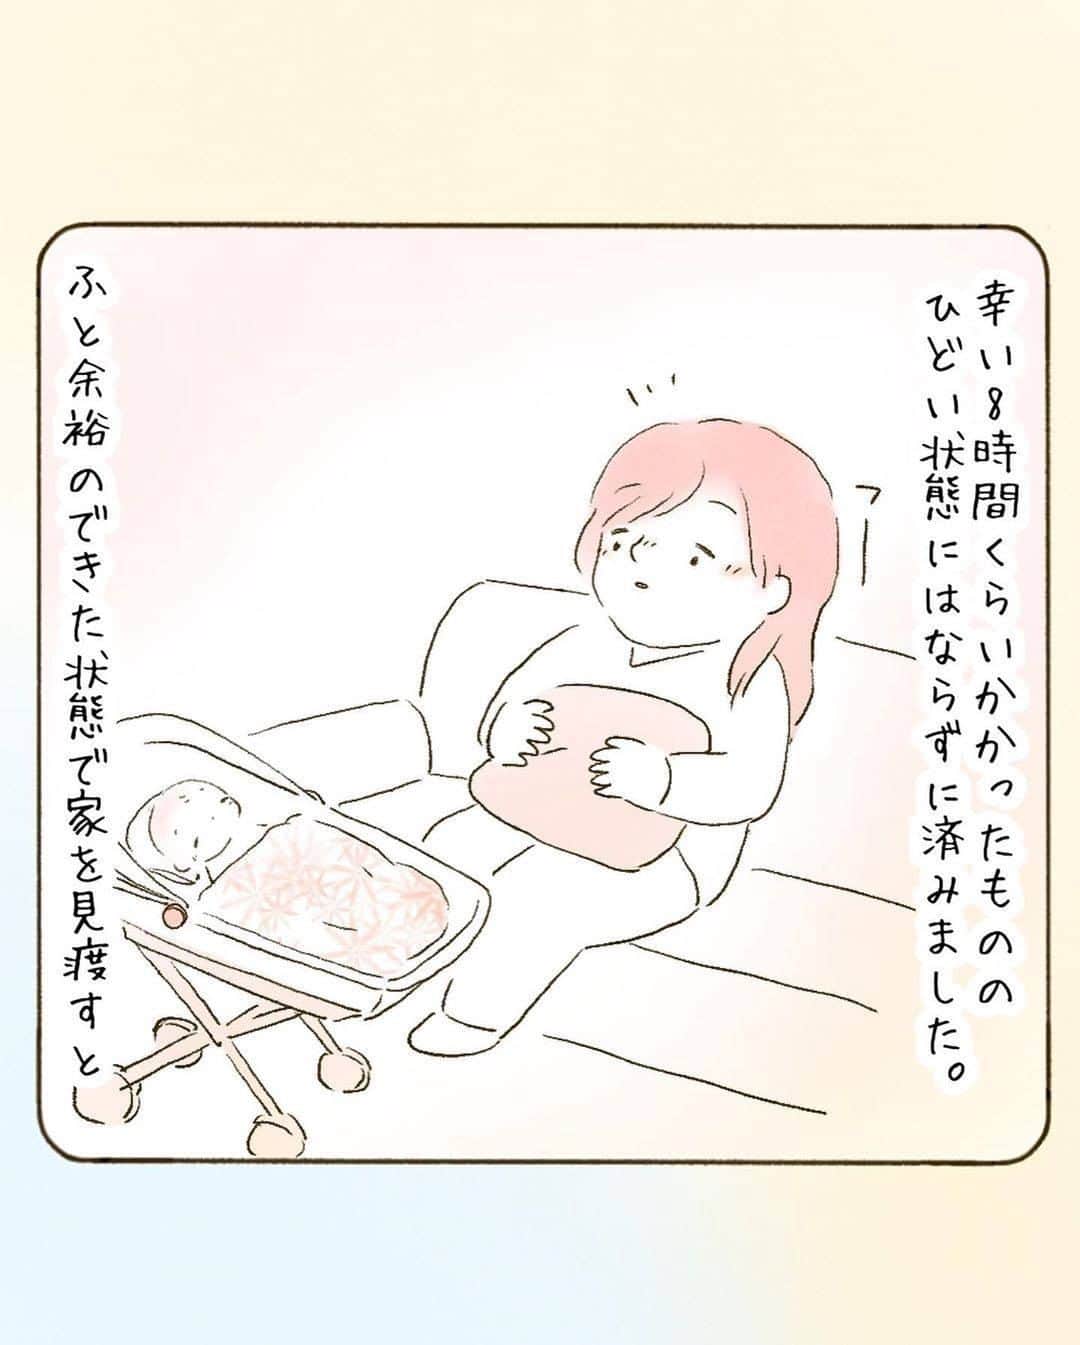 ママリさんのインスタグラム写真 - (ママリInstagram)「パパ素敵…😭❤いろんなことが不安定な産後。安心できるって大事ですよね✨ #ママリ ⠀﻿⁠⁠⠀⁠ ⁠.⠀⠀﻿⁠⠀⁠ . ⁠ ＝＝＝ ⁠ . ⠀﻿⁠⠀⁠ @nishiyama_tomoko07 さん、素敵な投稿ありがとうございました✨⁠⠀⁠ . ⁠⠀⁠ ⌒⌒⌒⌒⌒⌒⌒⌒⌒⌒⌒⌒⌒⌒⌒⌒*⁣⠀﻿⁠⠀⁠⠀⁠ みんなのおすすめアイテム教えて❤ ​⠀﻿⁠⠀⁠⠀⁠ #ママリ口コミ大賞 ​⁣⠀﻿⁠⠀⁠⠀⁠ ⠀﻿⁠⠀⁠⠀⁠ ⁣新米ママの毎日は初めてのことだらけ！⁣⁣⠀﻿⁠⠀⁠⠀⁠ その1つが、買い物。 ⁣⁣⠀﻿⁠⠀⁠⠀⁠ ⁣⁣⠀﻿⁠⠀⁠⠀⁠ 「家族のために後悔しない選択をしたい…」 ⁣⁣⠀﻿⁠⠀⁠⠀⁠ ⁣⁣⠀﻿⁠⠀⁠⠀⁠ そんなママさんのために、⁣⁣⠀﻿⁠⠀⁠⠀⁠ ＼子育てで役立った！／ ⁣⁣⠀﻿⁠⠀⁠⠀⁠ ⁣⁣⠀﻿⁠⠀⁠⠀⁠ あなたのおすすめグッズ教えてください🙏 ​ ​ ⁣⁣⠀﻿⁠⠀⁠⠀⁠ ⠀﻿⁠⠀⁠⠀⁠ 【応募方法】⠀﻿⁠⠀⁠⠀⁠ #ママリ口コミ大賞 をつけて、⠀﻿⁠⠀⁠⠀⁠ アイテム・サービスの口コミを投稿するだけ✨⠀﻿⁠⠀⁠⠀⁠ ⁣⁣⠀﻿⁠⠀⁠⠀⁠ (例)⠀﻿⁠⠀⁠⠀⁠ 「このママバッグは神だった」⁣⁣⠀﻿⁠⠀⁠⠀⁠ 「これで寝かしつけ助かった！」⠀﻿⁠⠀⁠⠀⁠ ⠀﻿⁠⠀⁠⠀⁠ あなたのおすすめ、お待ちしてます ​⠀﻿⁠⠀⁠⠀⁠ ⁣⠀⠀﻿⁠⠀⁠⠀⁠ * ⌒⌒⌒⌒⌒⌒⌒⌒⌒⌒⌒⌒⌒⌒⌒⌒*⁣⠀⠀⠀⁣⠀⠀﻿⁠⠀⁠⠀⁠ ⁣💫先輩ママに聞きたいことありませんか？💫⠀⠀⠀⠀⁣⠀⠀﻿⁠⠀⁠⠀⁠ .⠀⠀⠀⠀⠀⠀⁣⠀⠀﻿⁠⠀⁠⠀⁠ 「悪阻っていつまでつづくの？」⠀⠀⠀⠀⠀⠀⠀⁣⠀⠀﻿⁠⠀⁠⠀⁠ 「妊娠から出産までにかかる費用は？」⠀⠀⠀⠀⠀⠀⠀⁣⠀⠀﻿⁠⠀⁠⠀⁠ 「陣痛・出産エピソードを教えてほしい！」⠀⠀⠀⠀⠀⠀⠀⁣⠀⠀﻿⁠⠀⁠⠀⁠ .⠀⠀⠀⠀⠀⠀⁣⠀⠀﻿⁠⠀⁠⠀⁠ あなたの回答が、誰かの支えになる。⠀⠀⠀⠀⠀⠀⠀⁣⠀⠀﻿⁠⠀⁠⠀⁠ .⠀⠀⠀⠀⠀⠀⁣⠀⠀﻿⁠⠀⠀⠀⠀⠀⠀⠀⠀⠀⠀⠀⠀⁠⠀⁠⠀⁠ 👶🏻　💐　👶🏻　💐　👶🏻 💐　👶🏻 💐﻿⁠ #育児日記 #育児漫画 #コミックエッセイ #イラストエッセイ #イラスト #子育て #育児絵日記 #絵日記 #エッセイ漫画 #子育て漫画 #子育て記録 #子育てあるある #育児あるある #ママあるある #デジタルツイート #新生児#0歳 #1歳 #搾乳 #母乳問題 #出産 #産後#生後4ヶ月#赤ちゃんのいる暮らし#赤ちゃんのいる生活#母乳育児#完母」5月28日 21時03分 - mamari_official